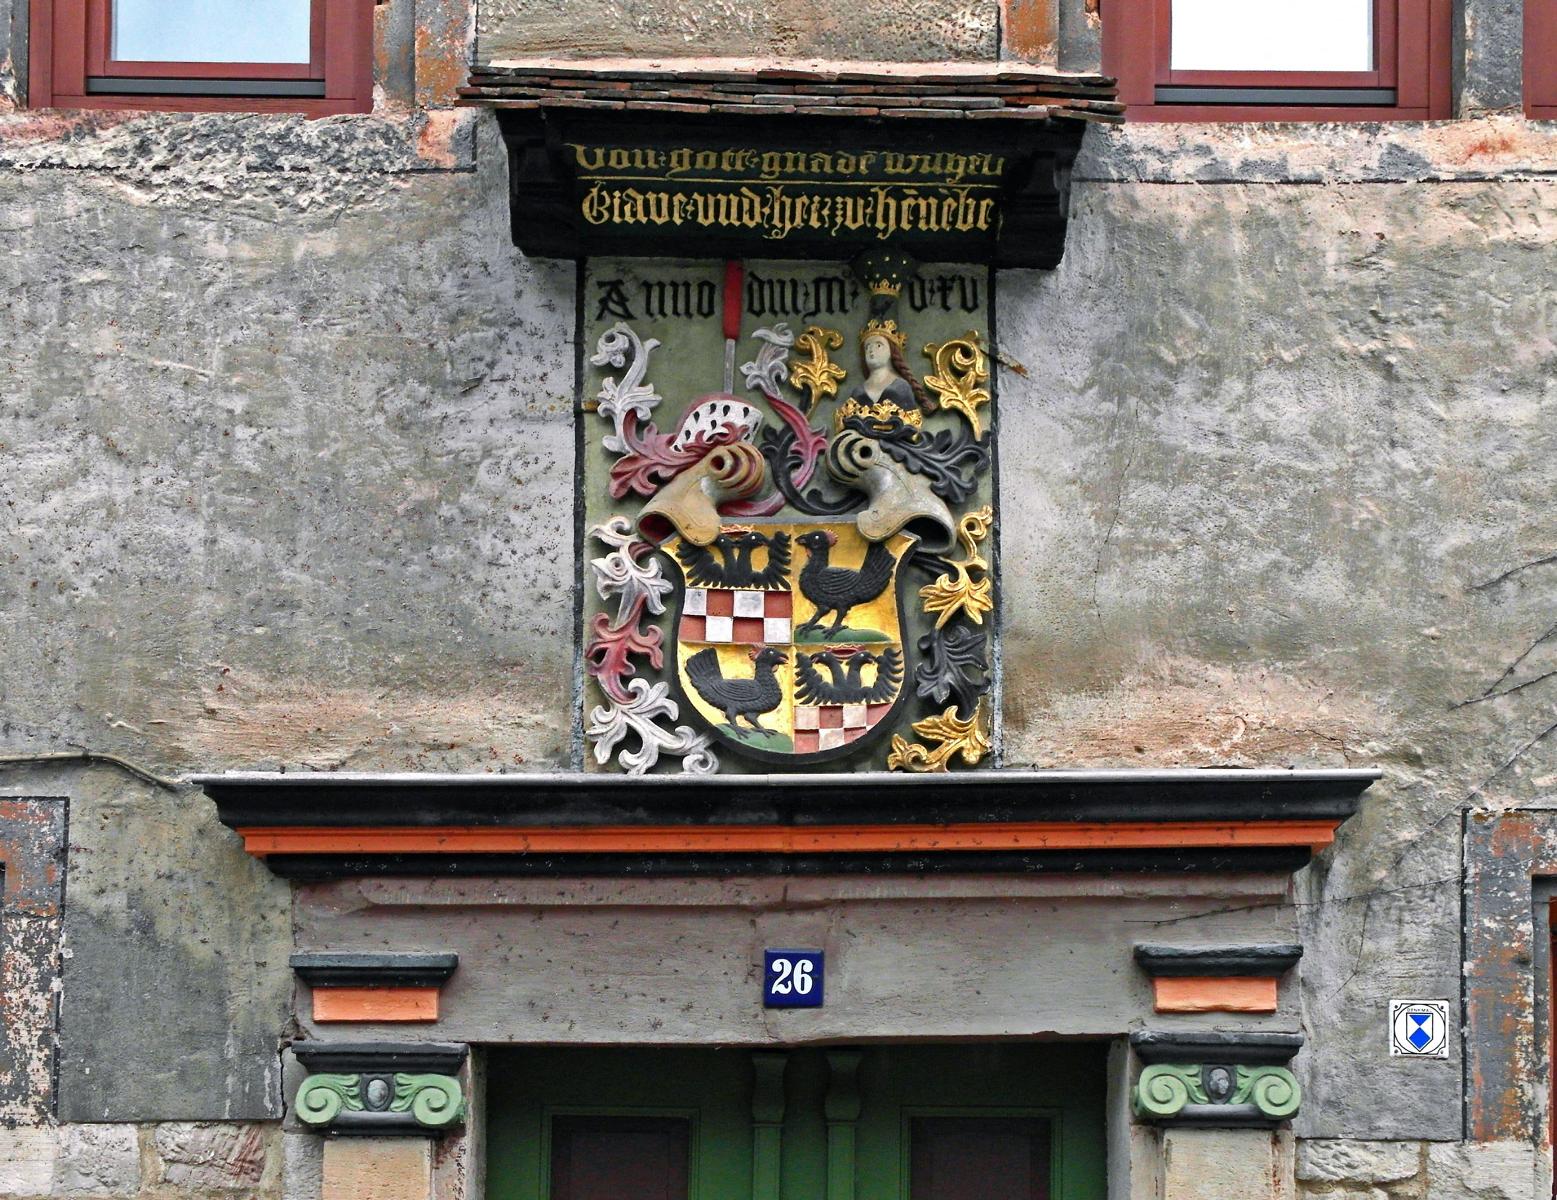 Schmalkalden: Heiliggrabesbehausung - Henneberger Wappen (2017)